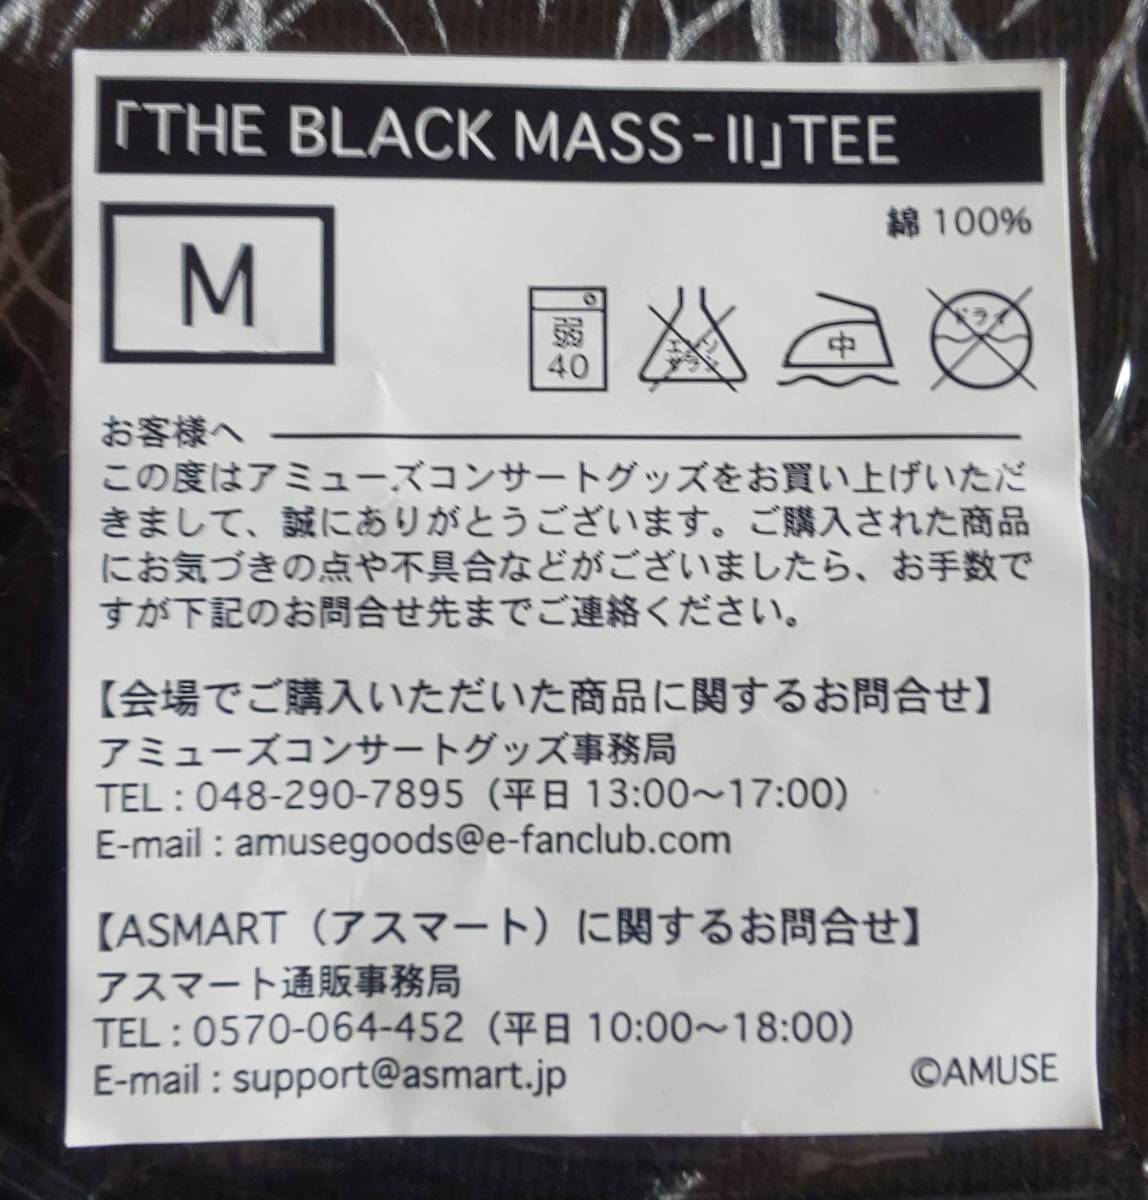 新品未開封 BABYMETAL「THE BLACK MASS-Ⅱ」TEE Tシャツ Mサイズ 2015年8月21日 -THE ONE-限定 APOCRYPHA-THE BLACK MASS-II ベビーメタル_画像3